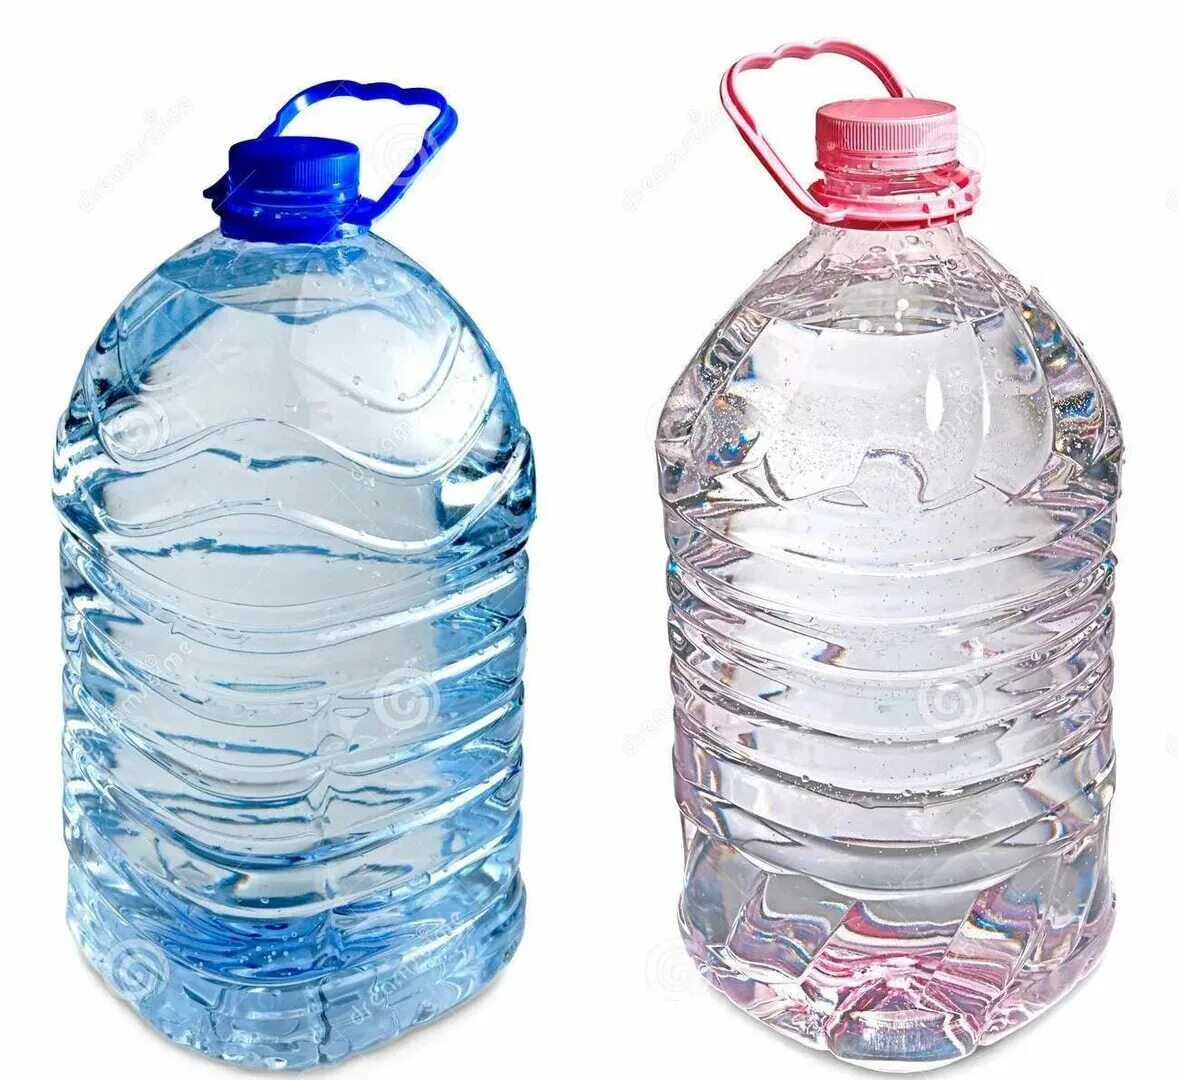 Сколько пятилитровых бутылок. Пятилитровая бутылка. Пятилитровая бутылка воды. Бутылка воды 5 л. Пятилитровые пластиковые бутылки.